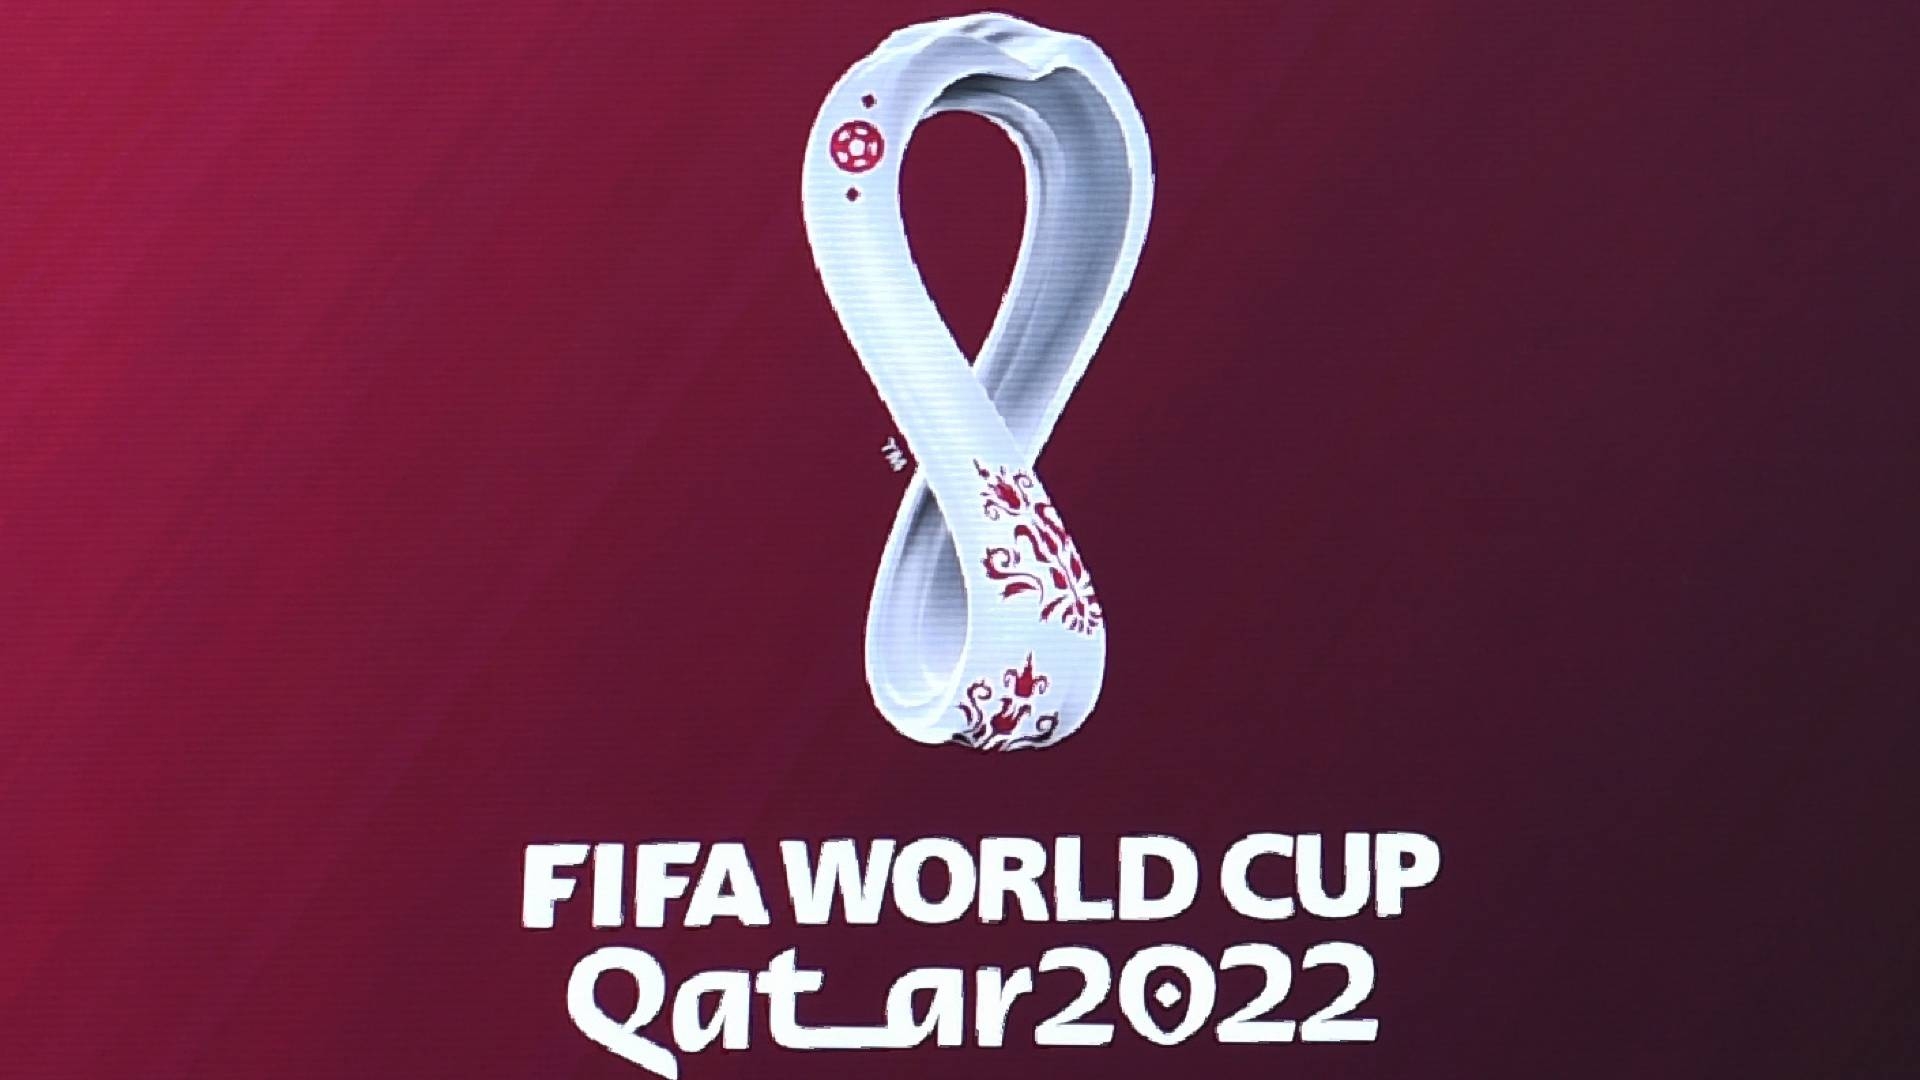 كأس العالم قطر 2022 أضبط الآن تردد القنوات الناقلة وبين سبورت المفتوحة لمتابعة مباريات دور ال 16